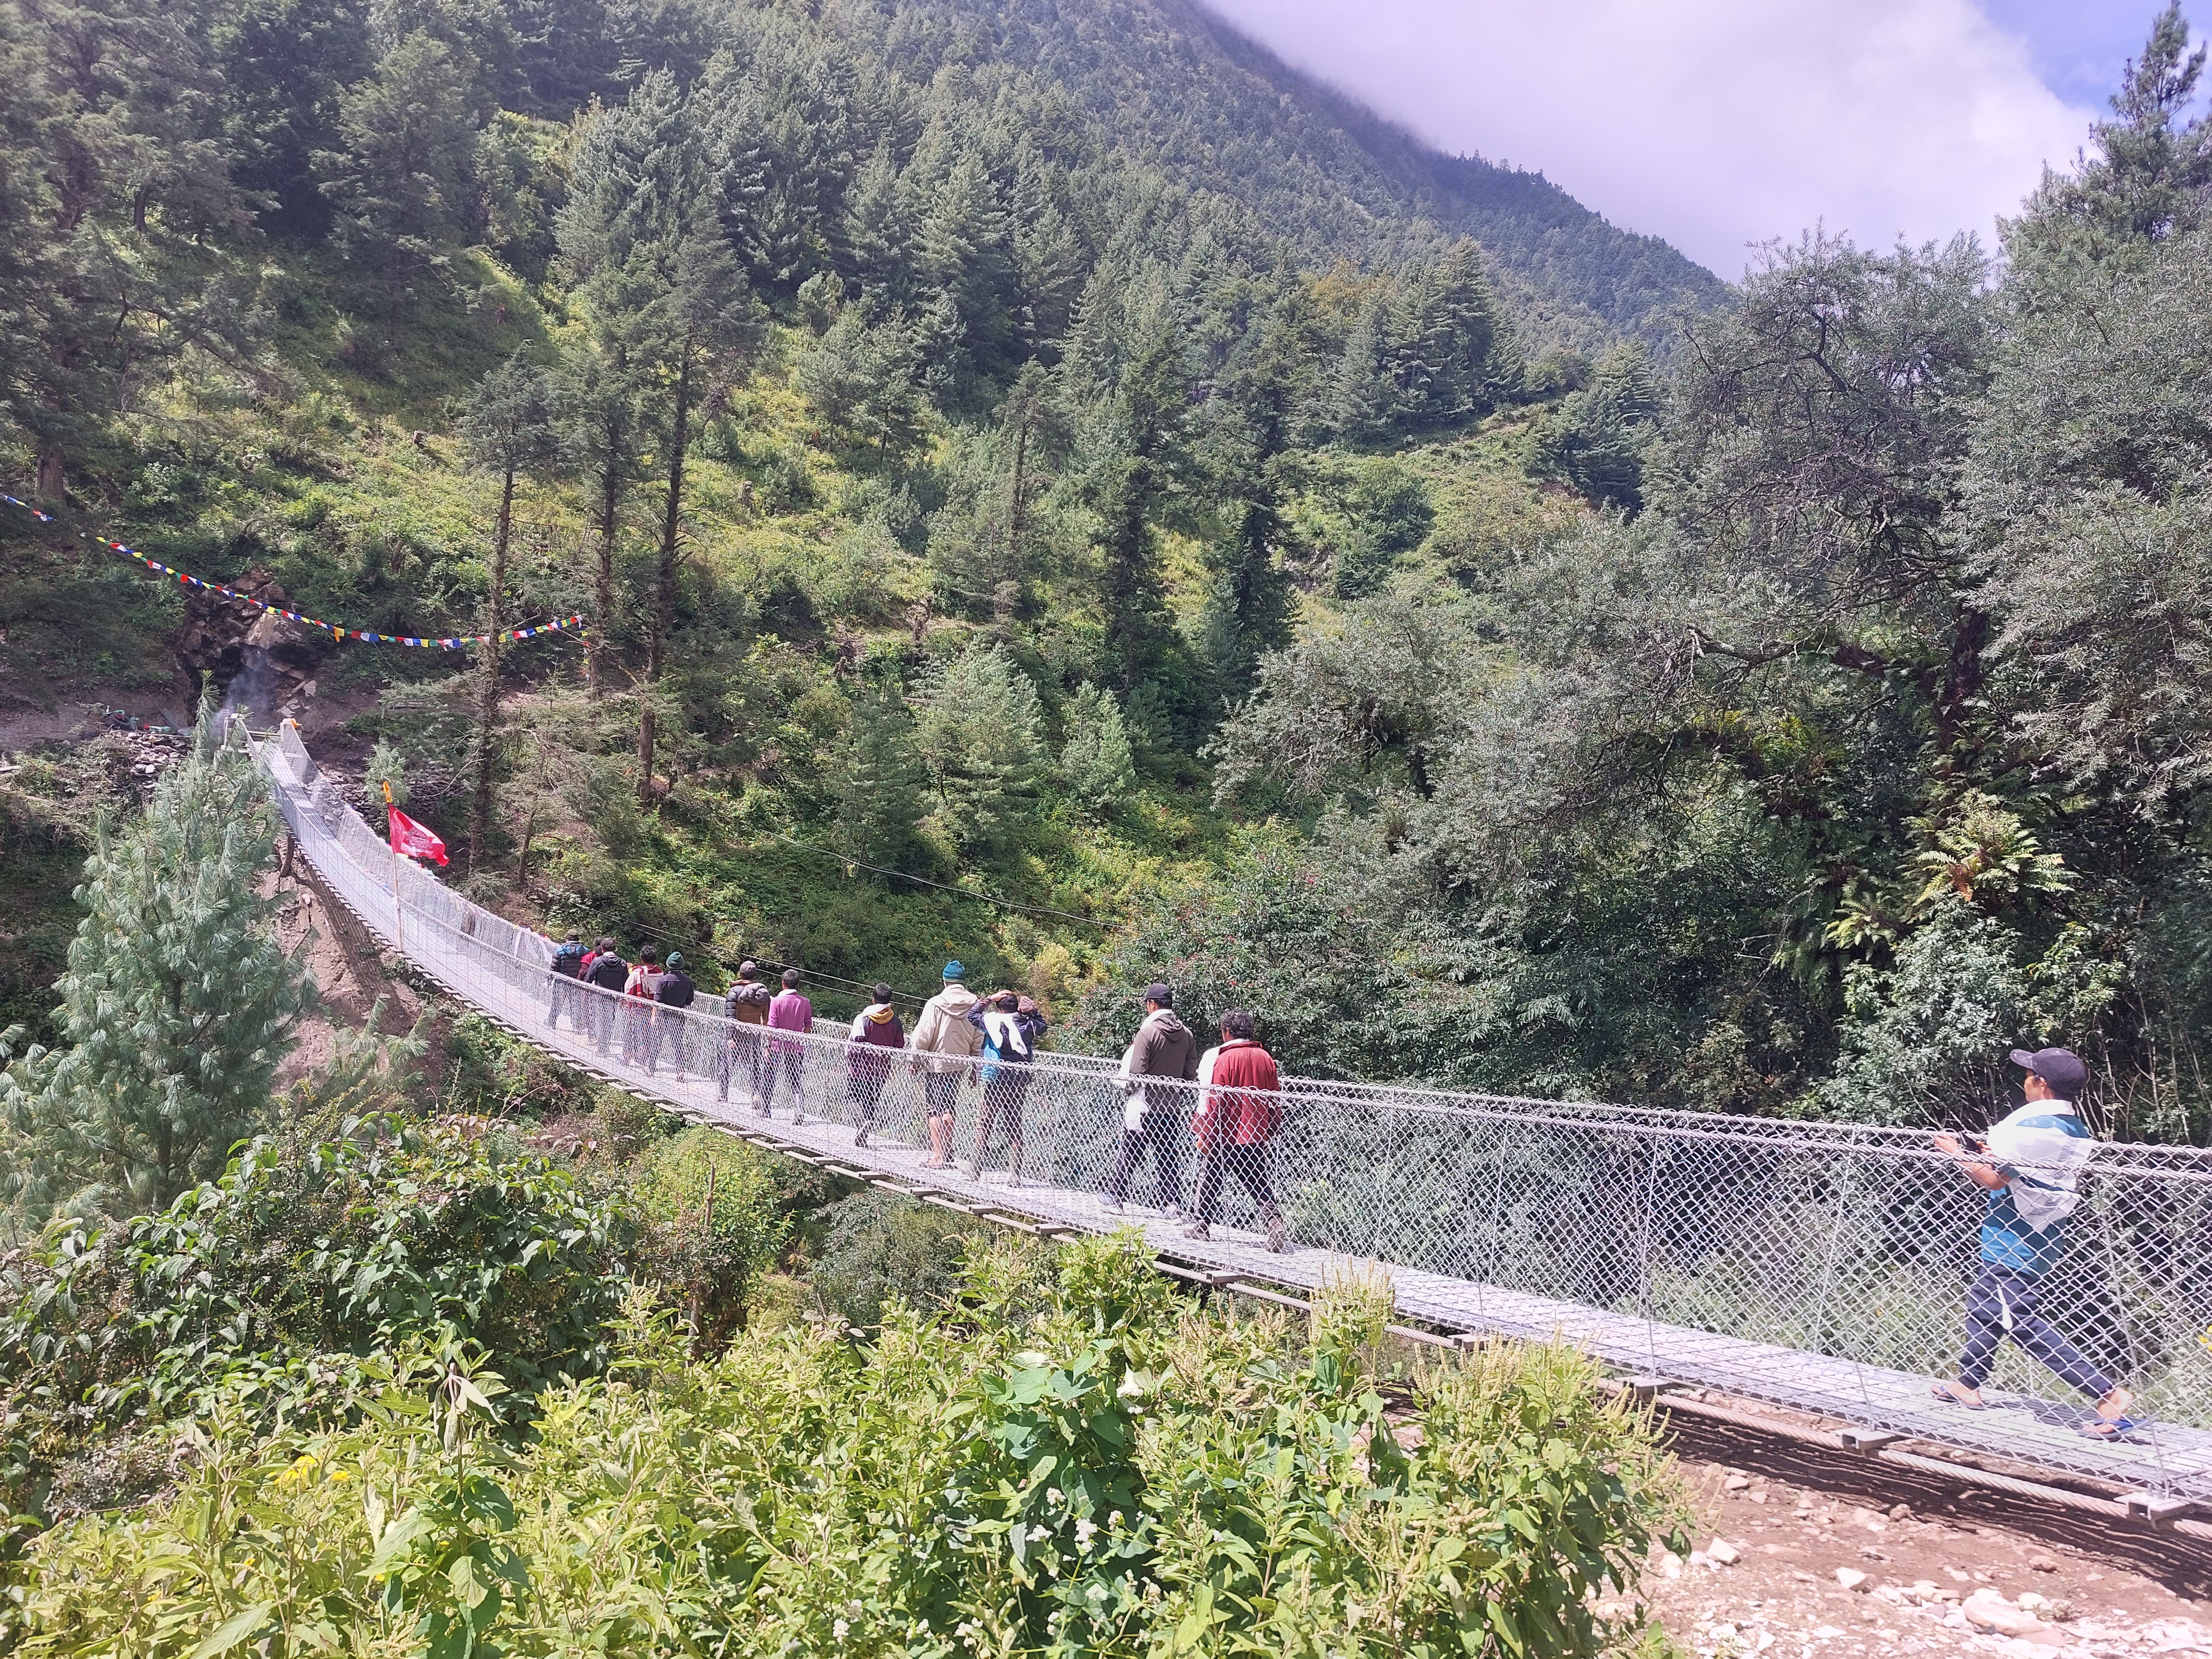 Gumda Khola Trail Bridge 83m Span